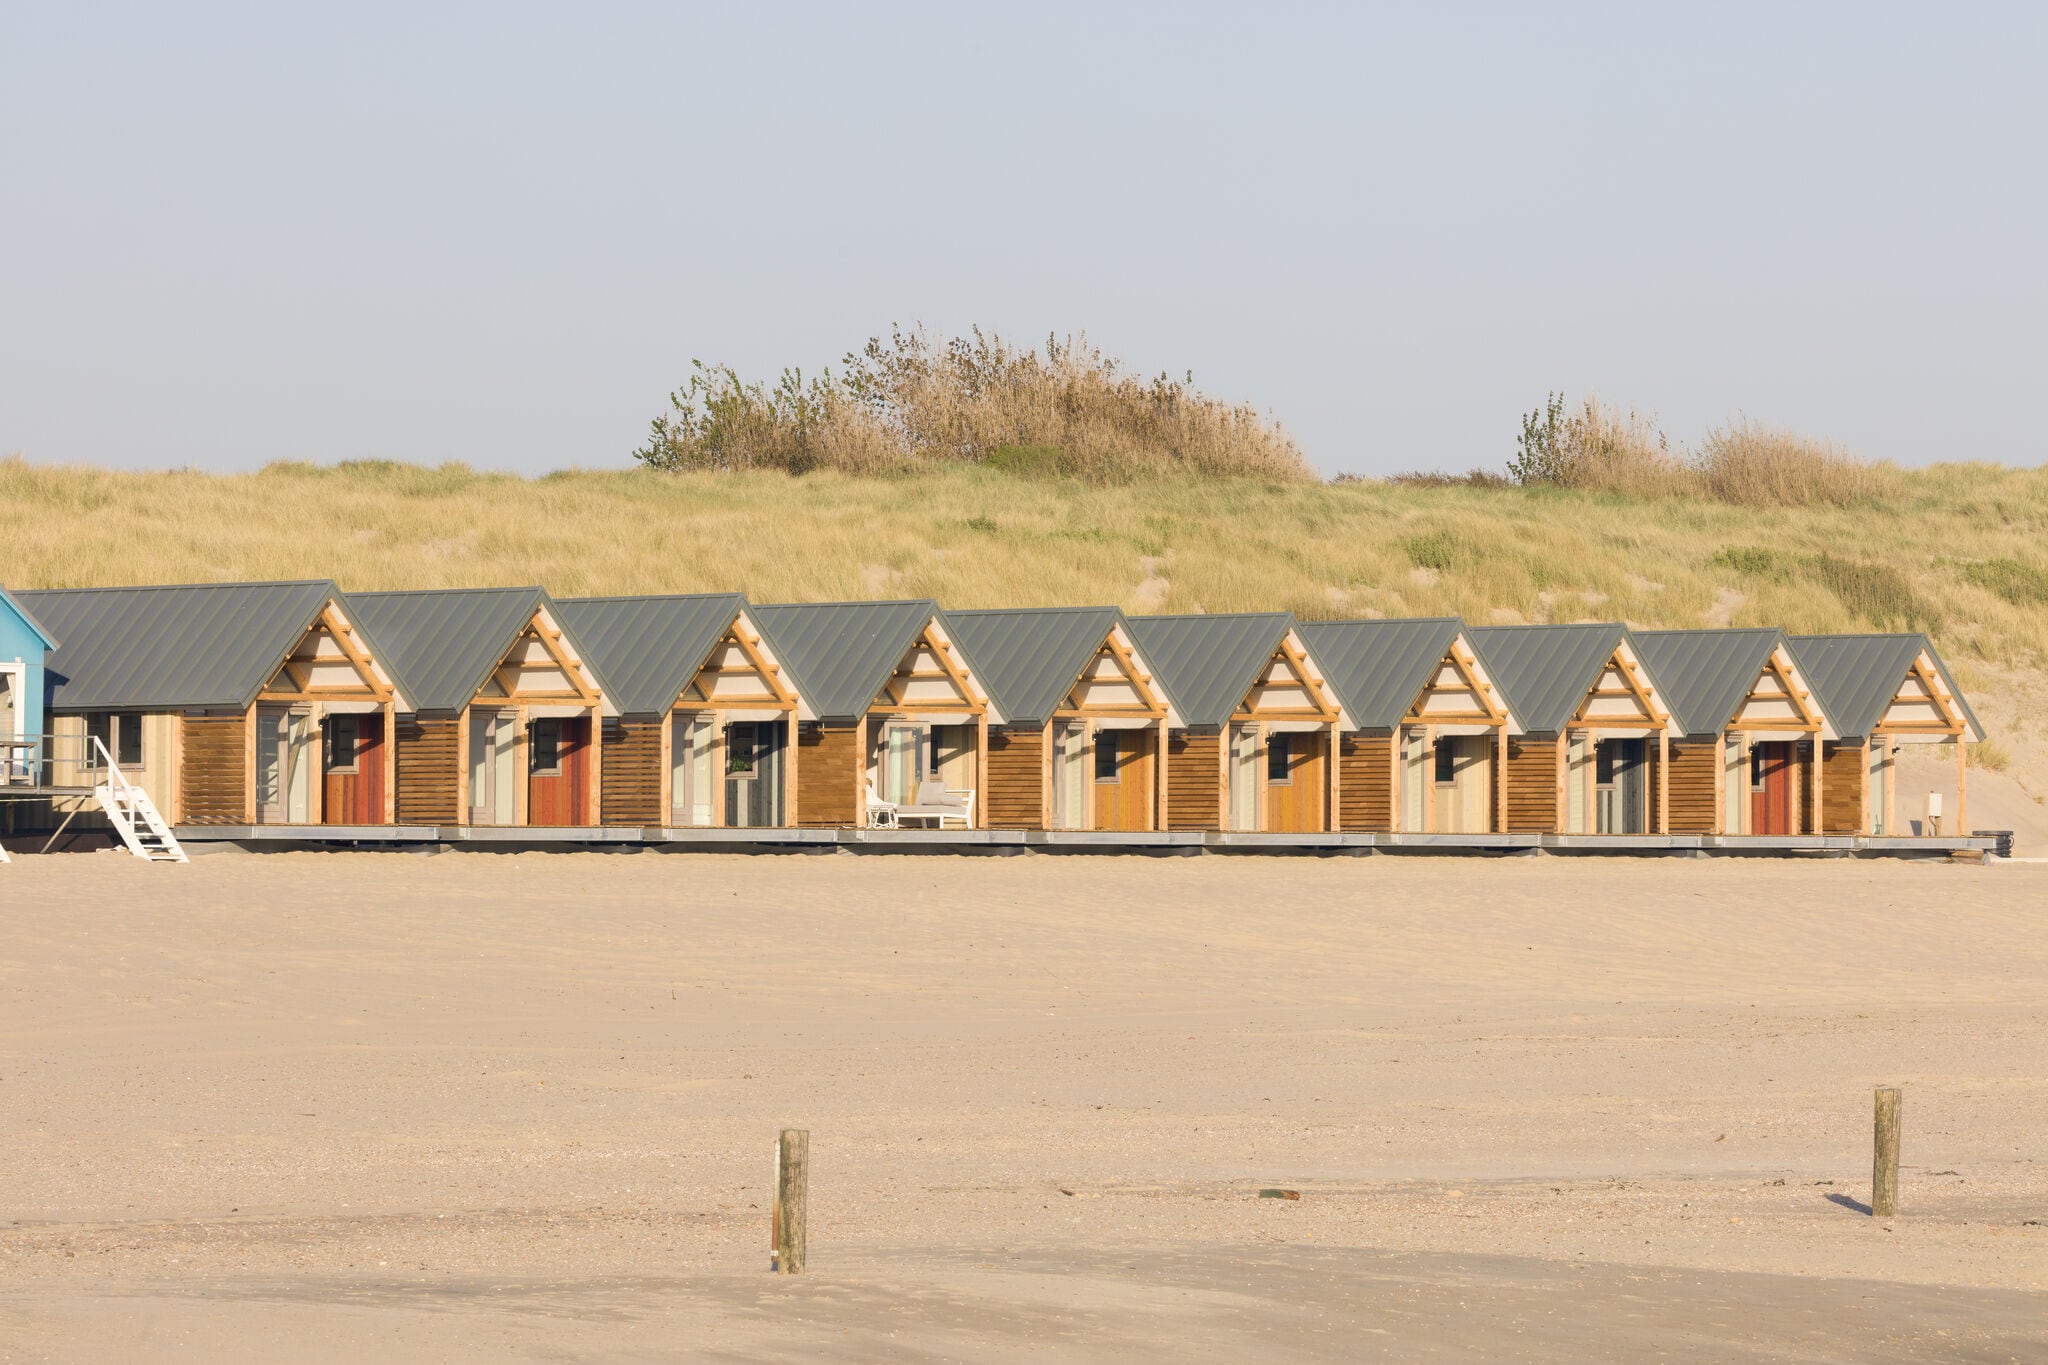 Maison de vacances magnifiquement située sur la plage propre de Vlissingen